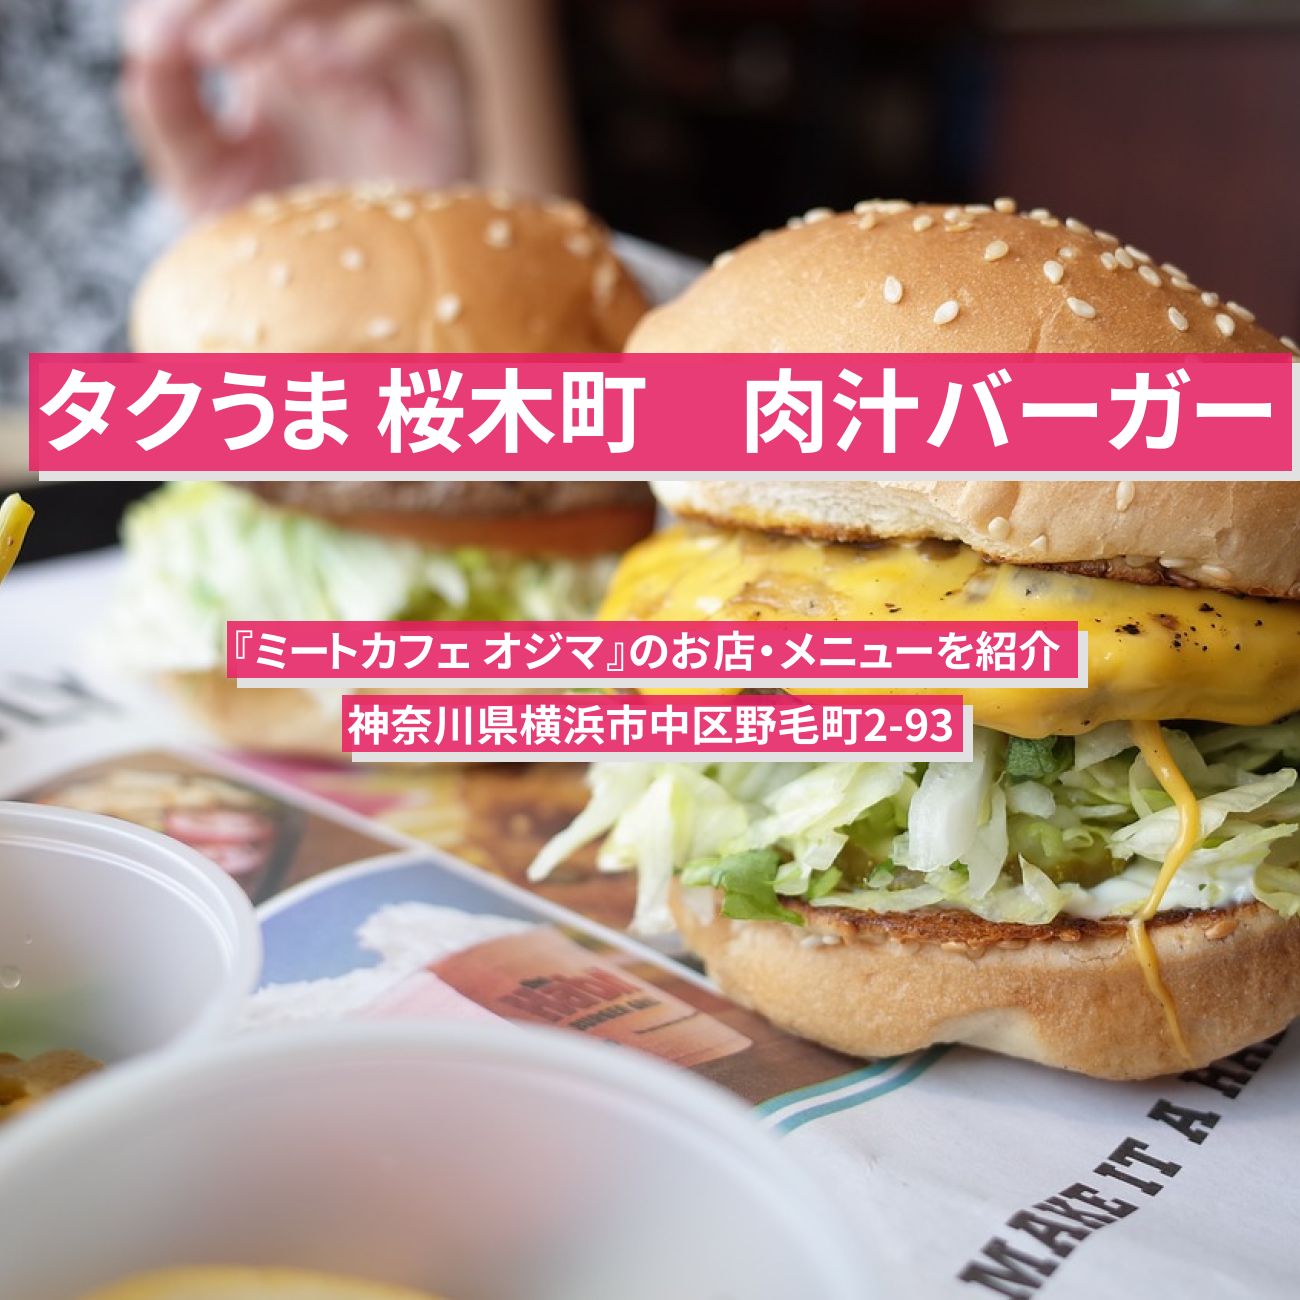 【タクうま　肉汁たっぷりハンバーガー】桜木町『ミートカフェ オジマ』のお店・メニューを紹介 〔タクシー運転手さん一番うまい店に連れてって〕